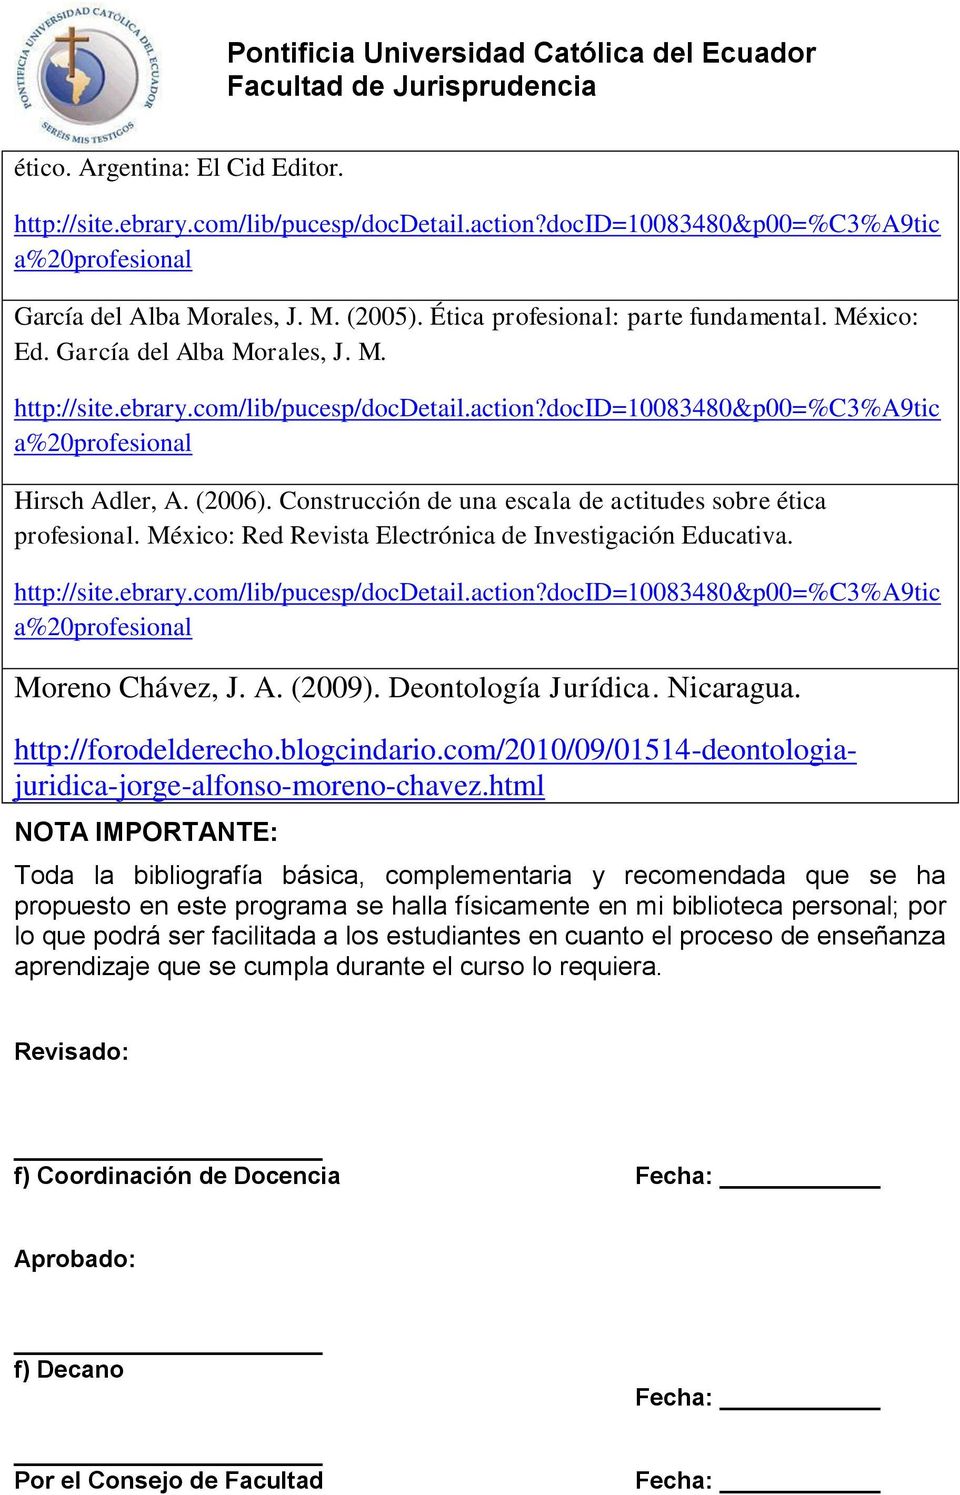 Construcción de una escala de actitudes sobre ética profesional. México: Red Revista Electrónica de Investigación Educativa. http://site.ebrary.com/lib/pucesp/docdetail.action?